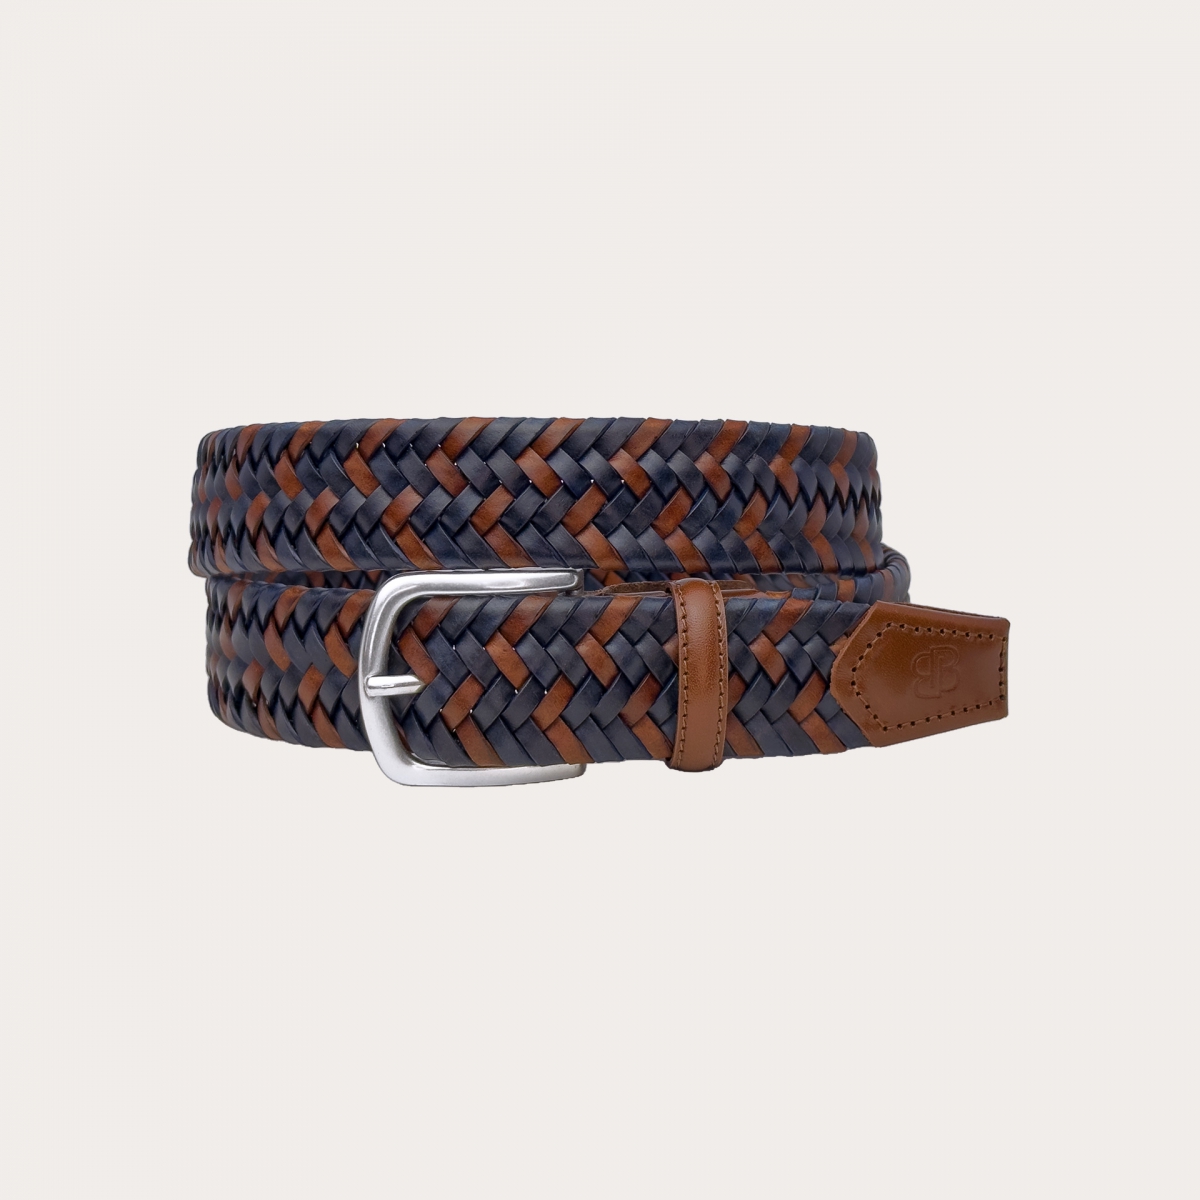 Cintura elastica intrecciata in cuoio, marrone e blu